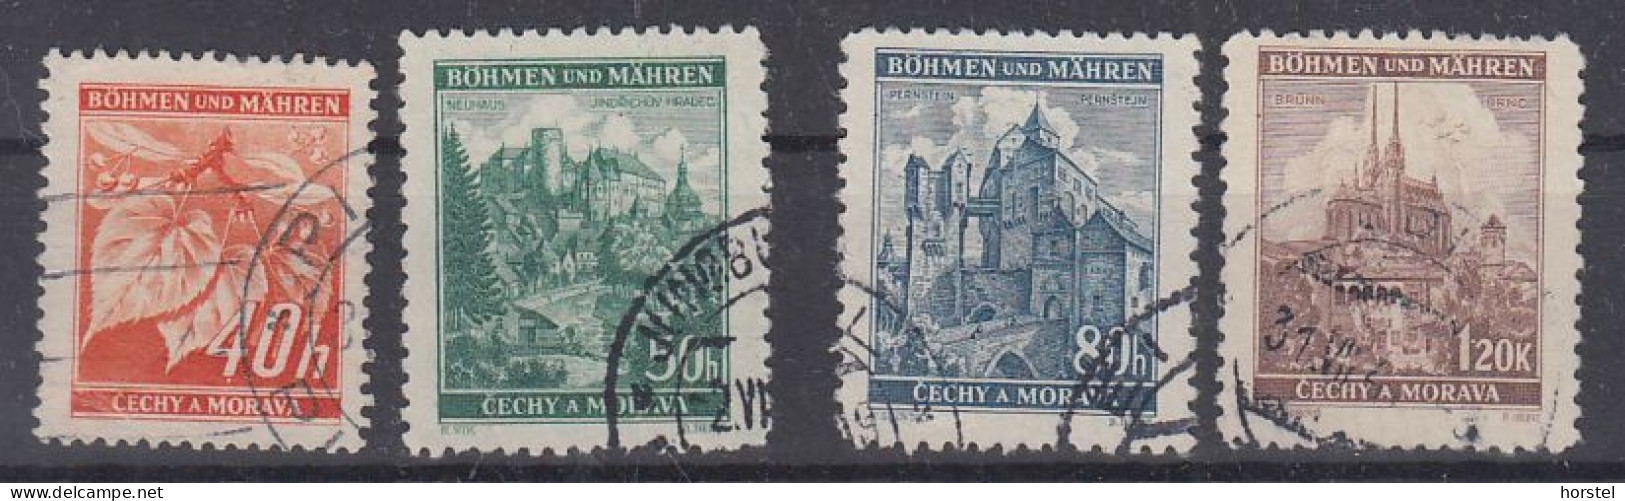 Böhmen Und Mähren  Mi 38-41  Freimarken Landschaften Und Füchte - 4x Gestempelt - Used Stamps